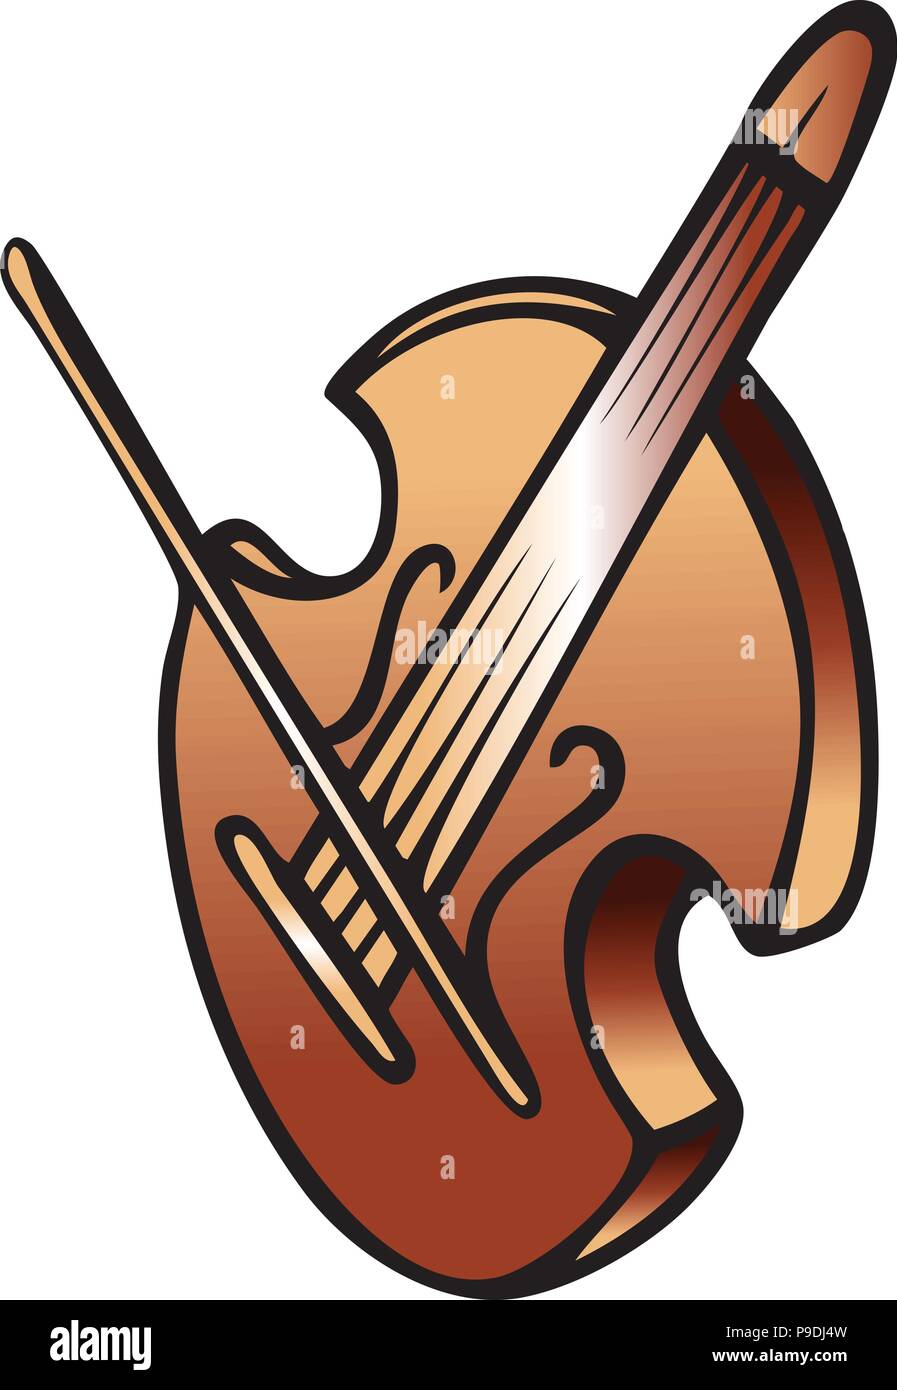 cartoon vector illustration of a violin Stock Vector